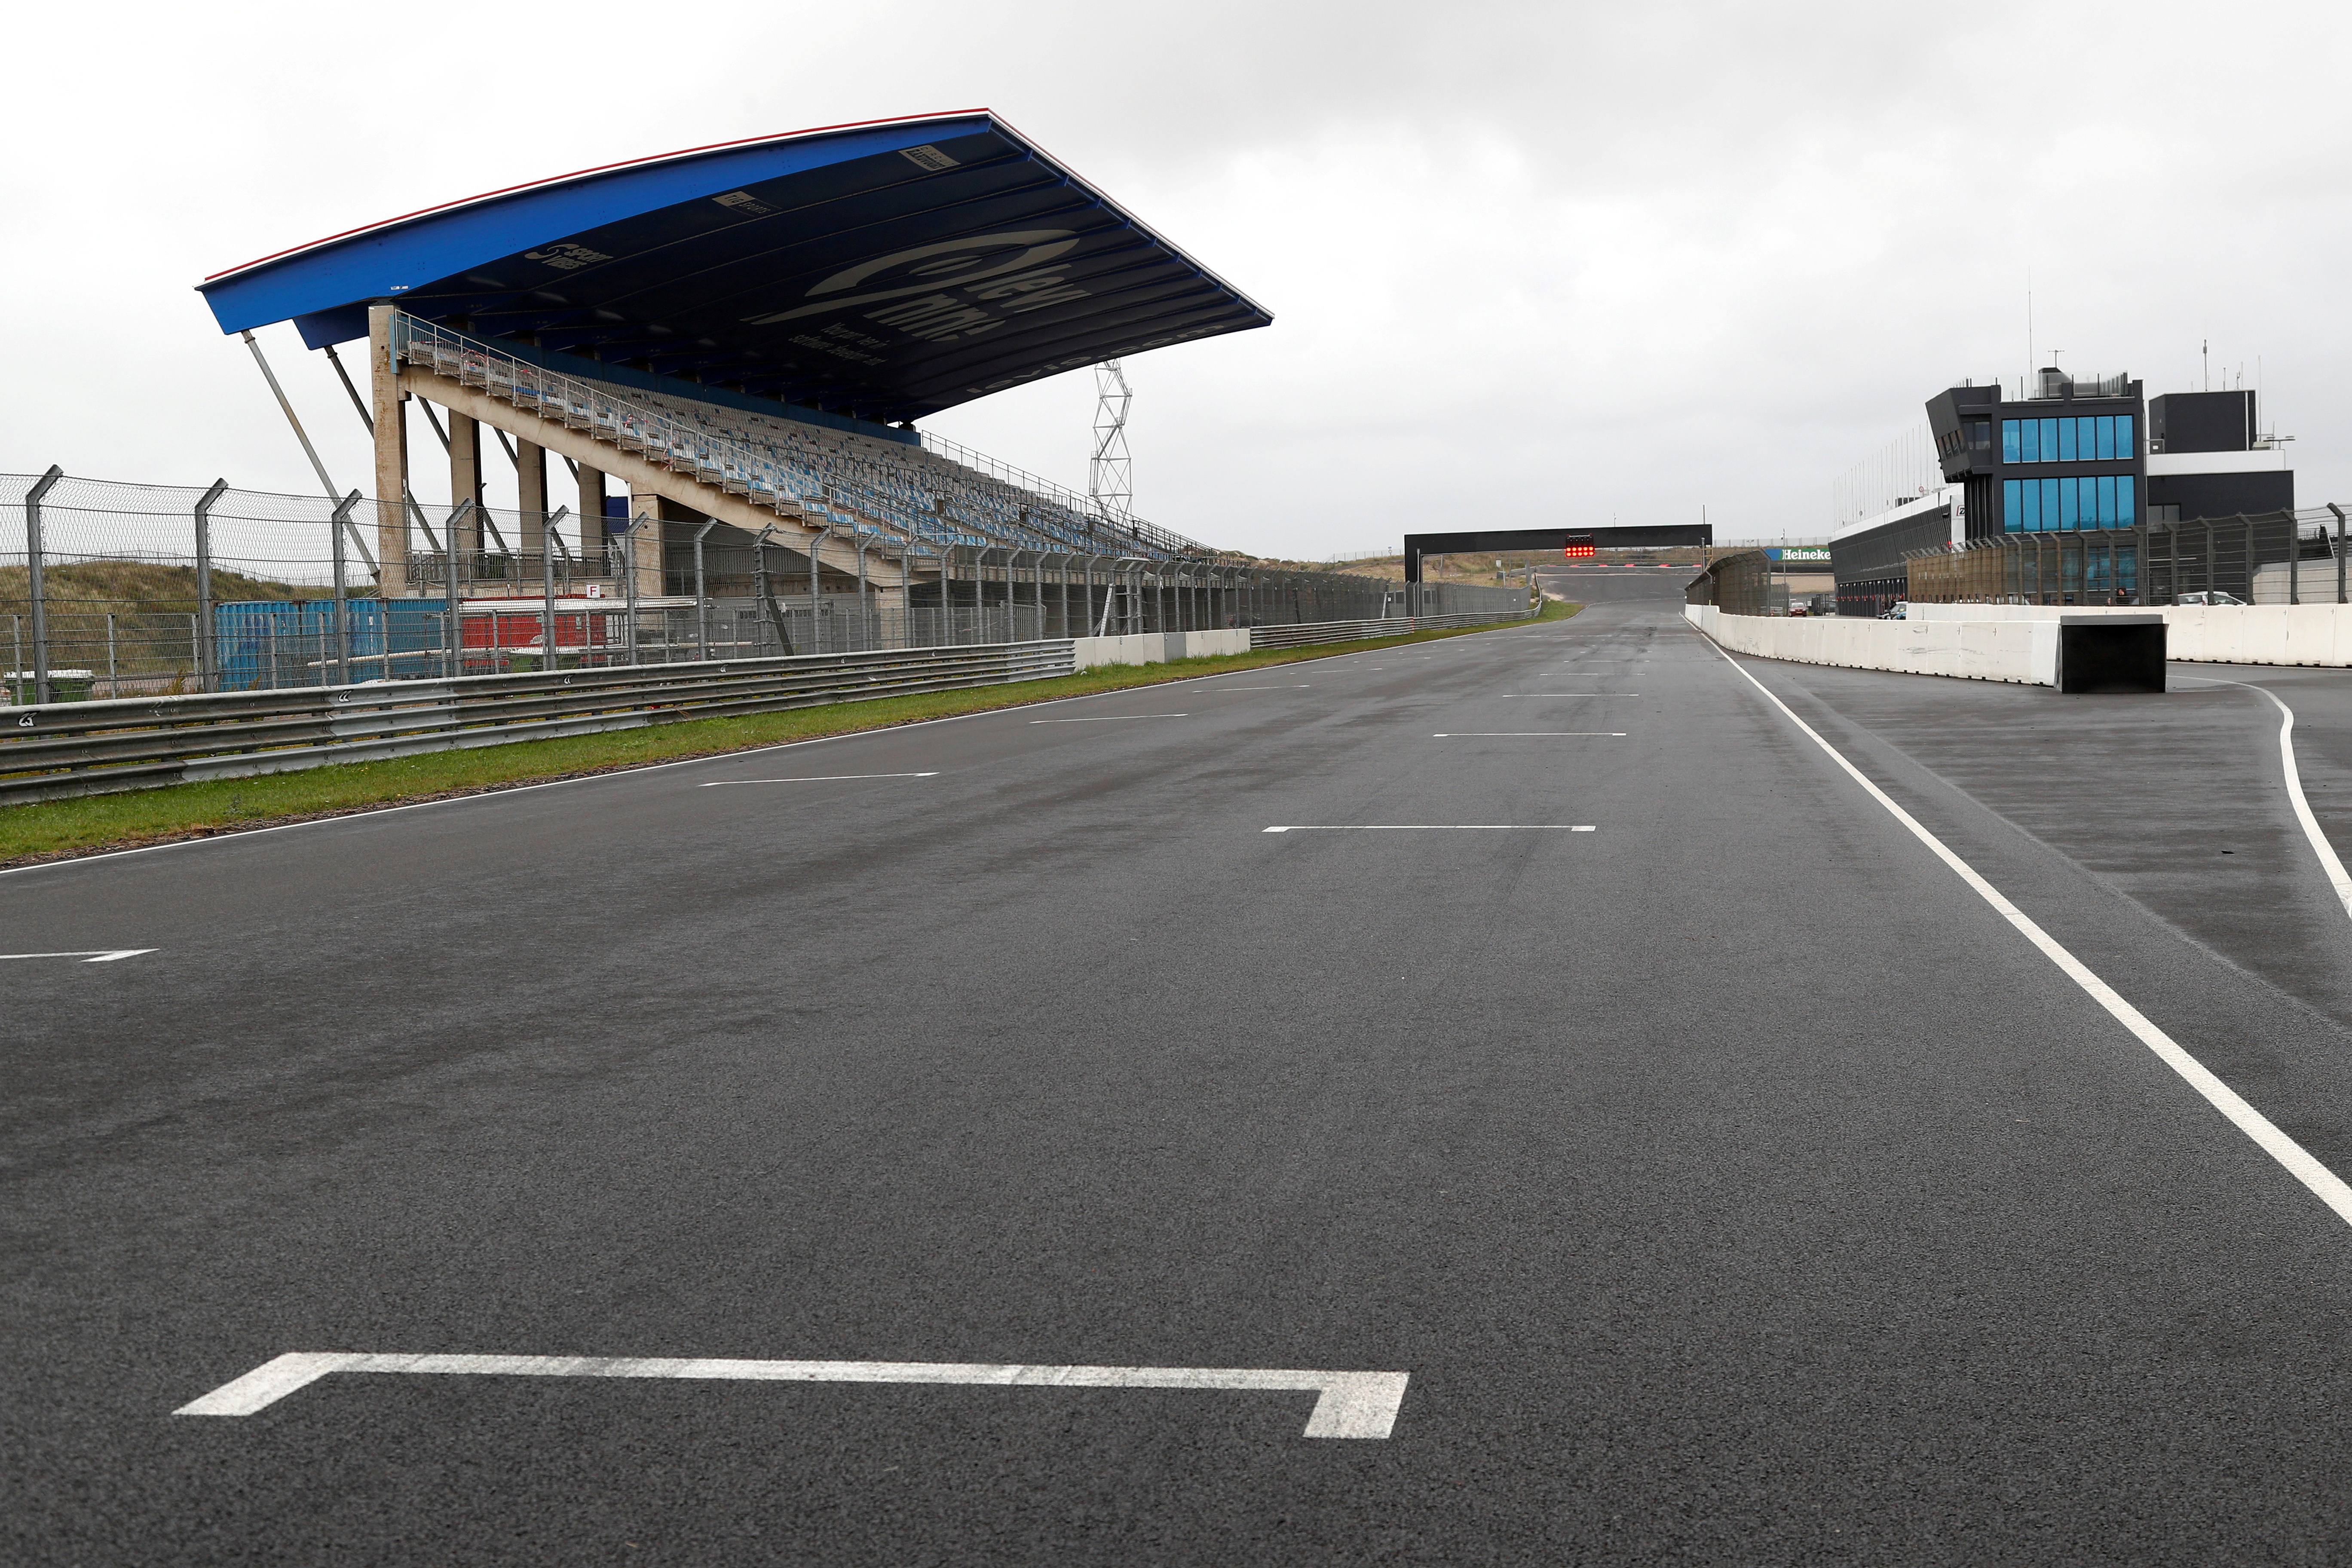 Dutch Grand Prix circuit ready for 2021 season